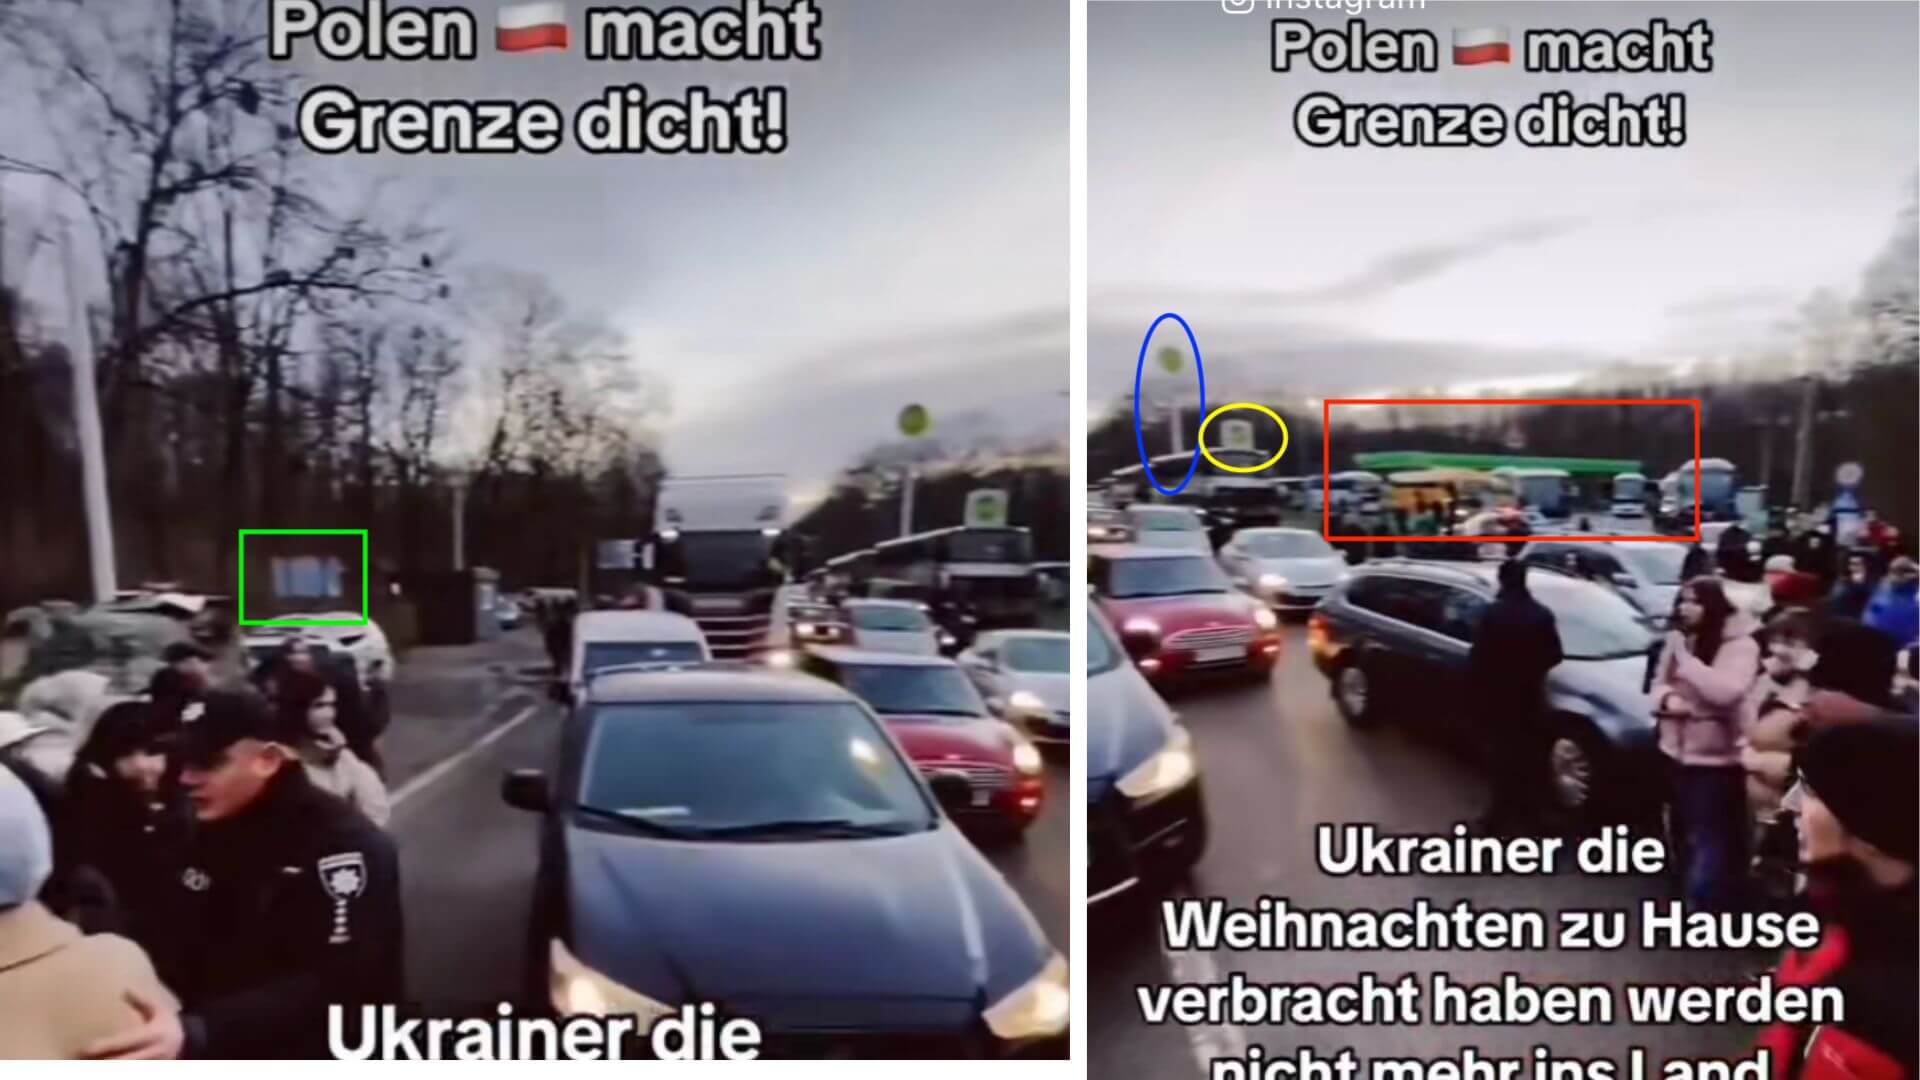 In einem Video über die angebliche Grenzschließung Polens sind eine Tankstelle und mehrere Schilder zu erkennen